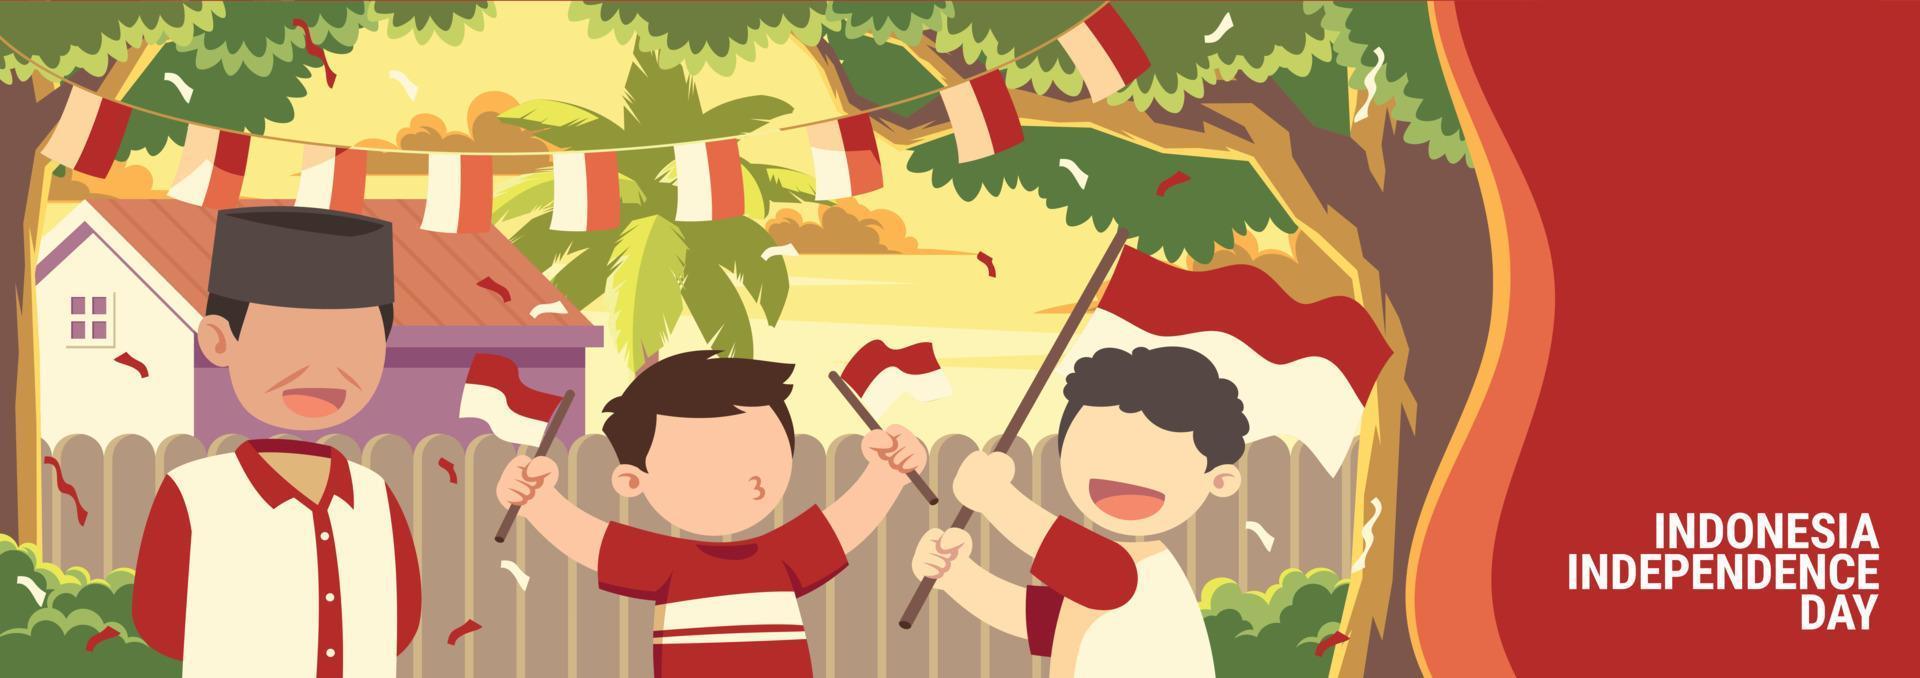 velho e duas crianças estão comemorando a ilustração do dia da independência da indonésia vetor